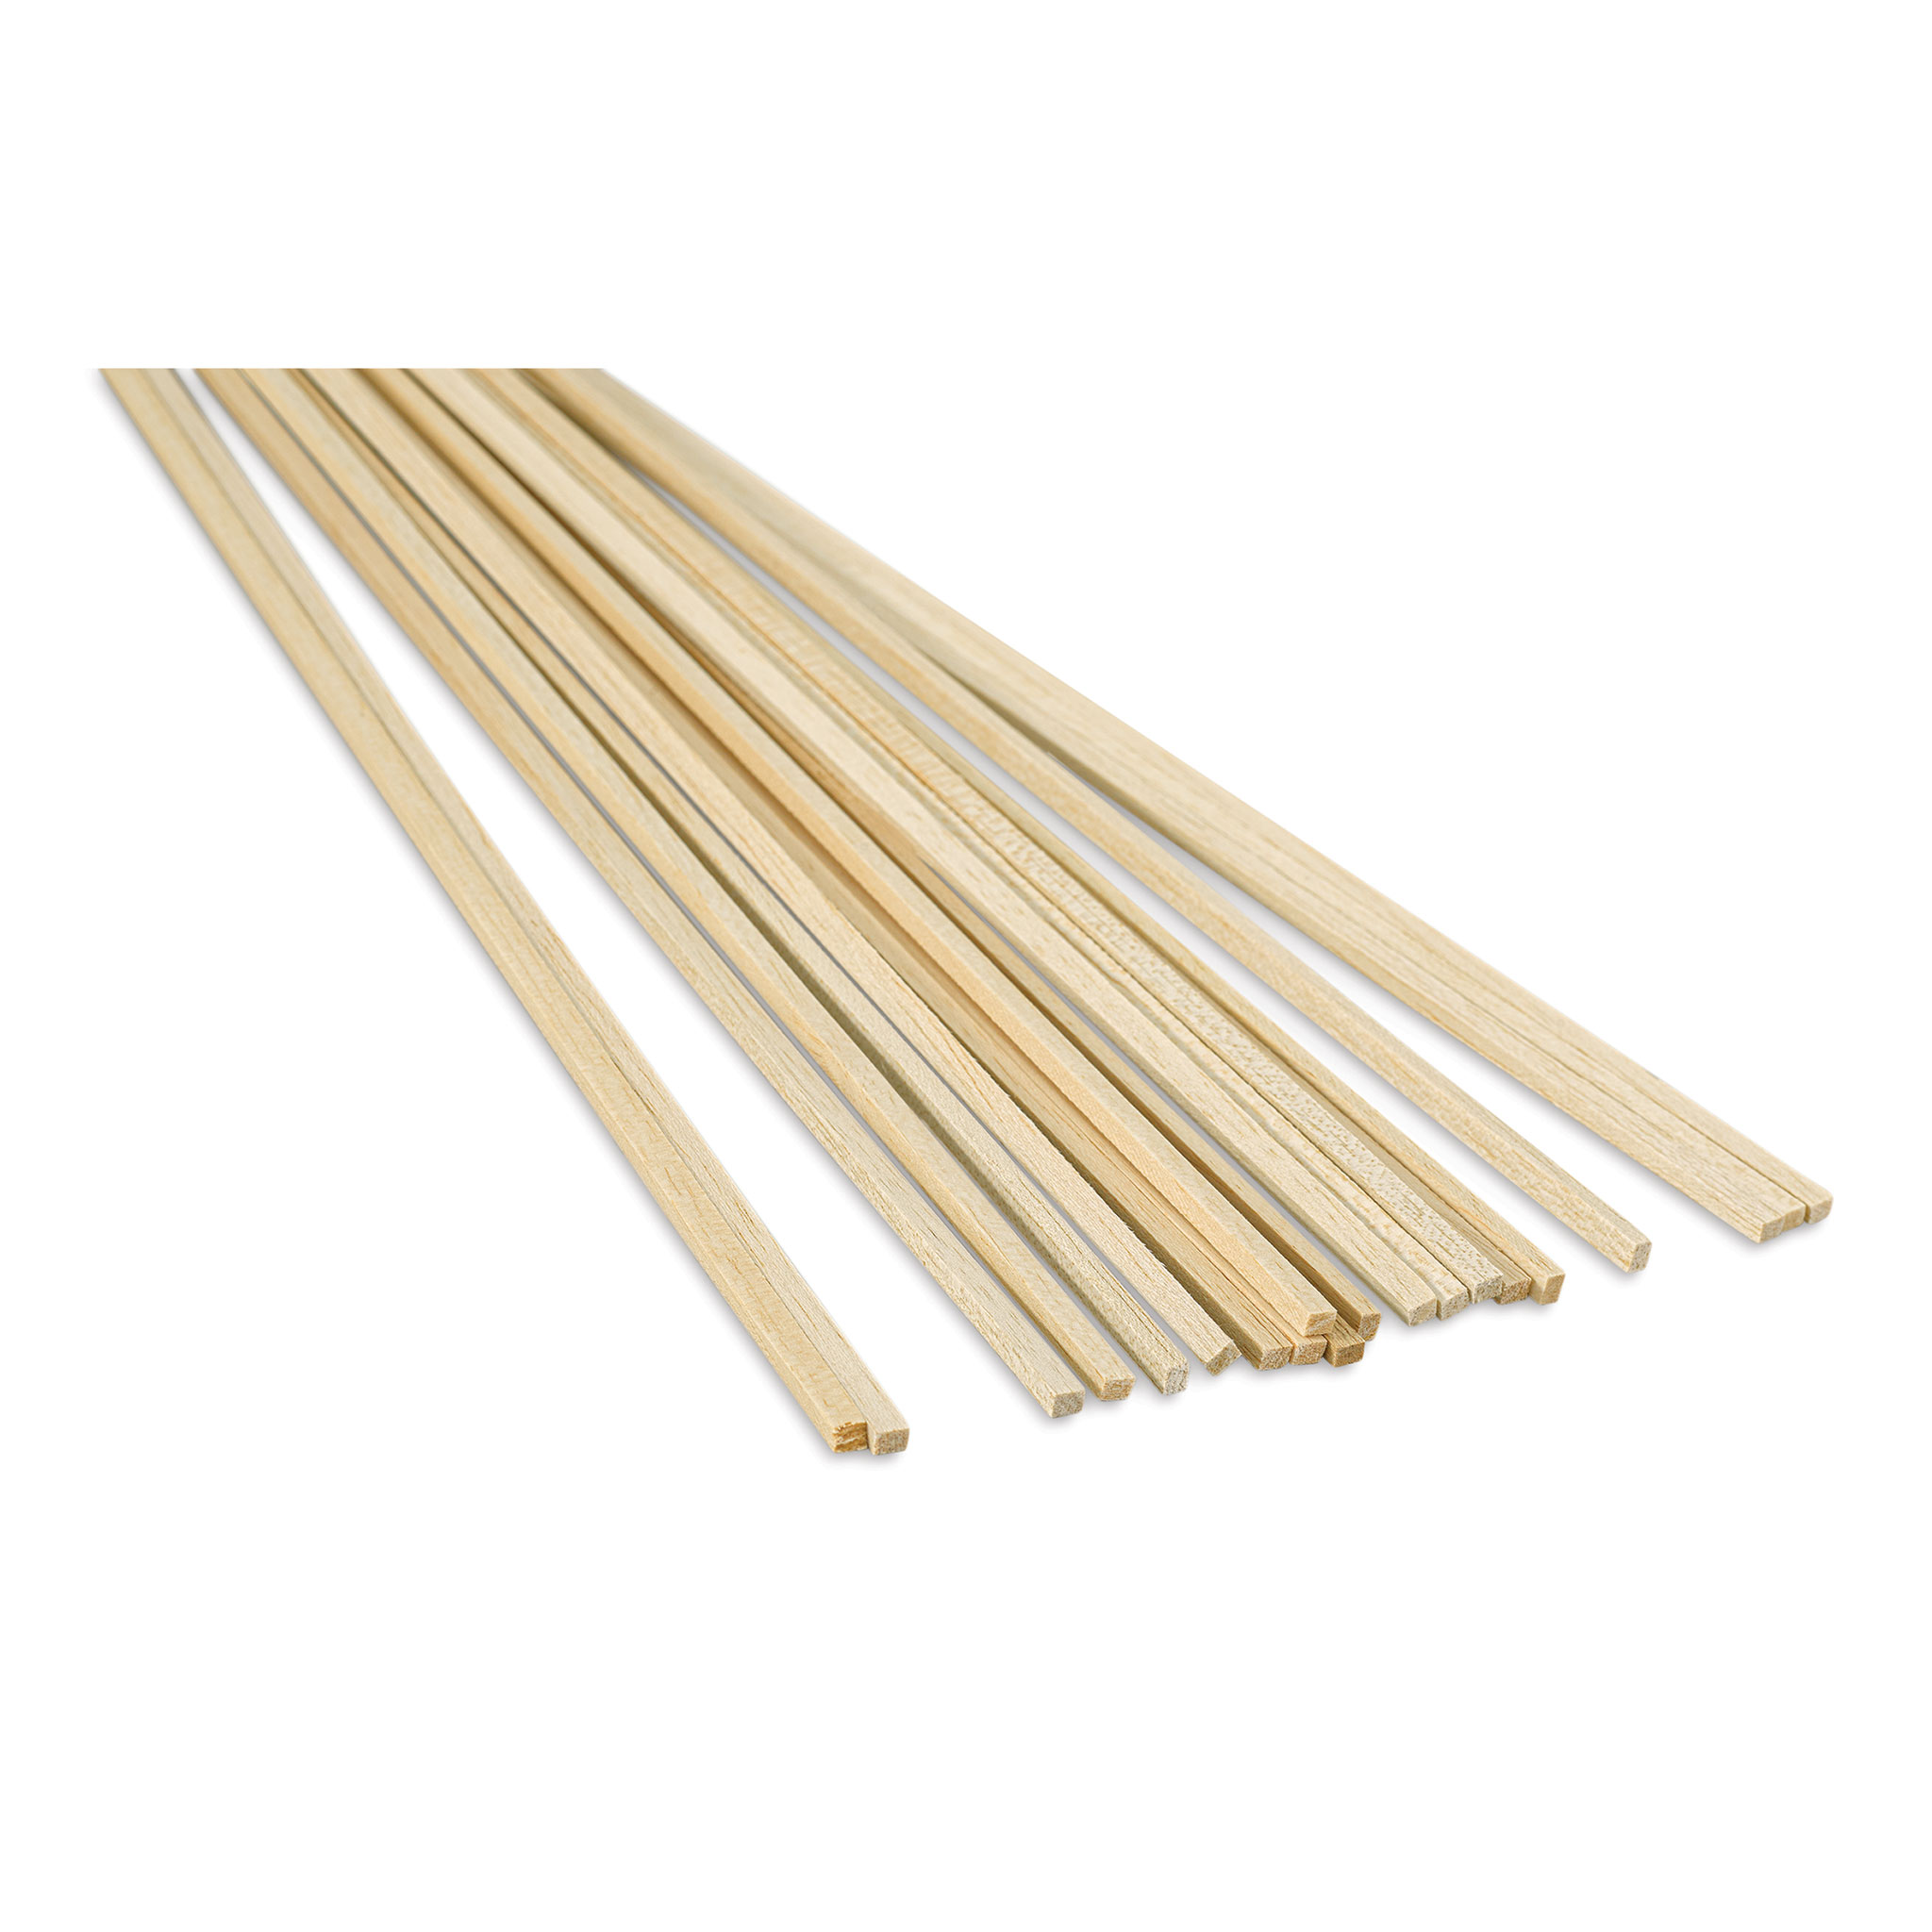 Bud Nosen Models 1015 1/16 x 3/8 x 36 Balsa Wood Sticks (Pack of 28 –  Trainz